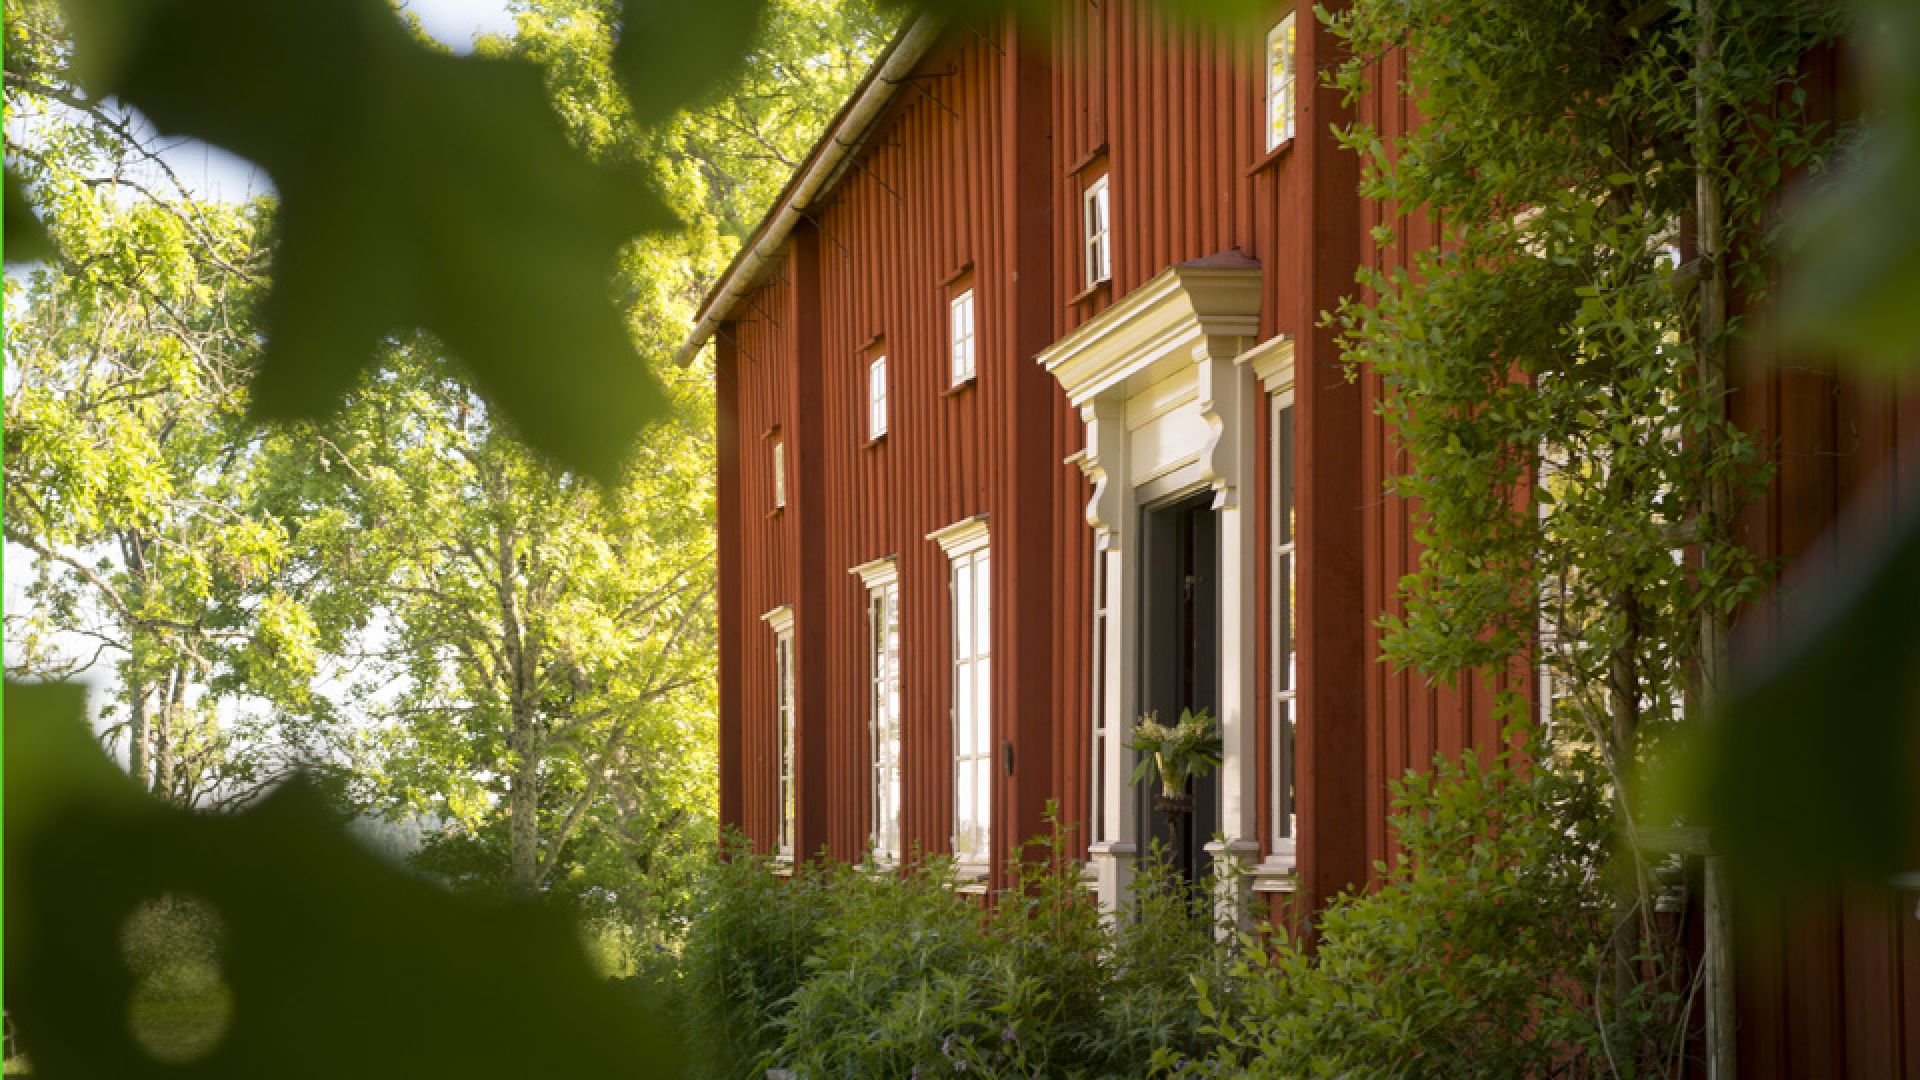 von Echstedtska gården är kanske den märkligaste av Värmlands ännu bevarade äldre gårdar.